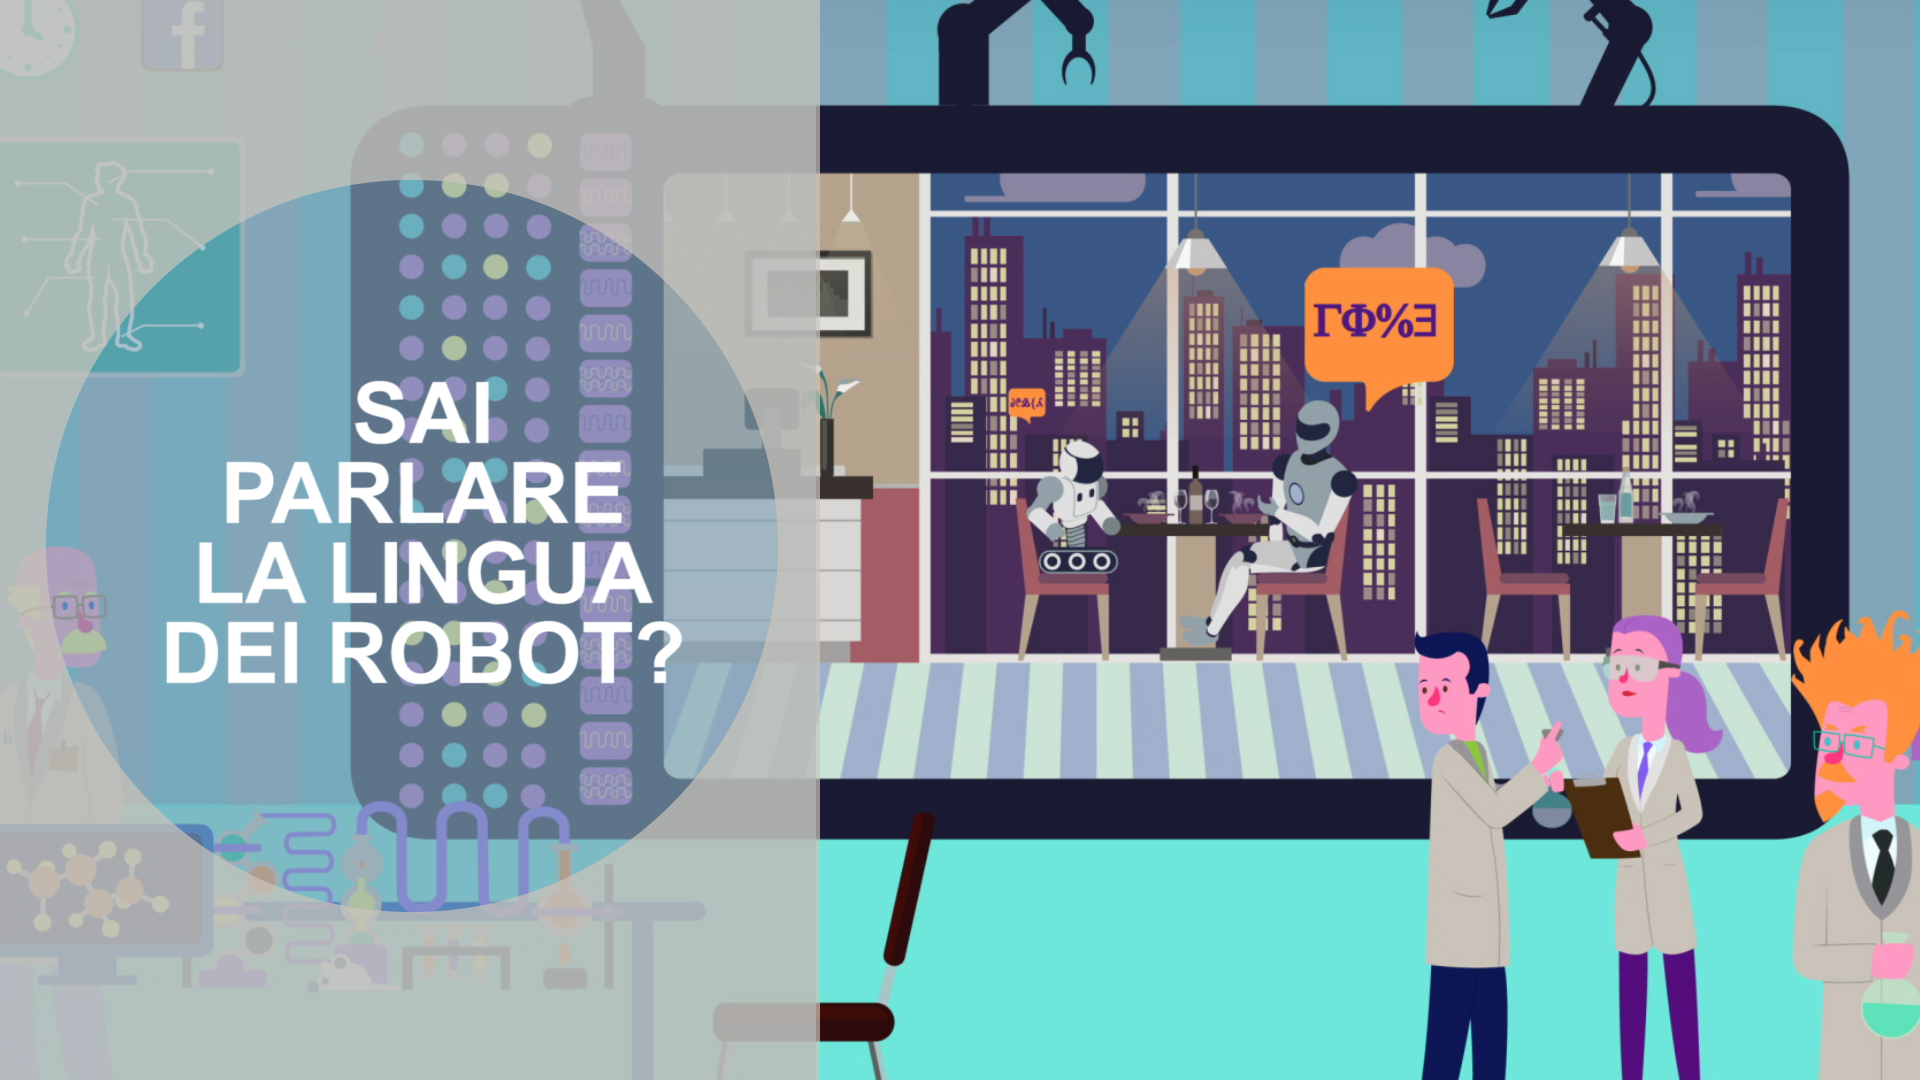 Il futuro della nostra lingua e' affidato ai robot